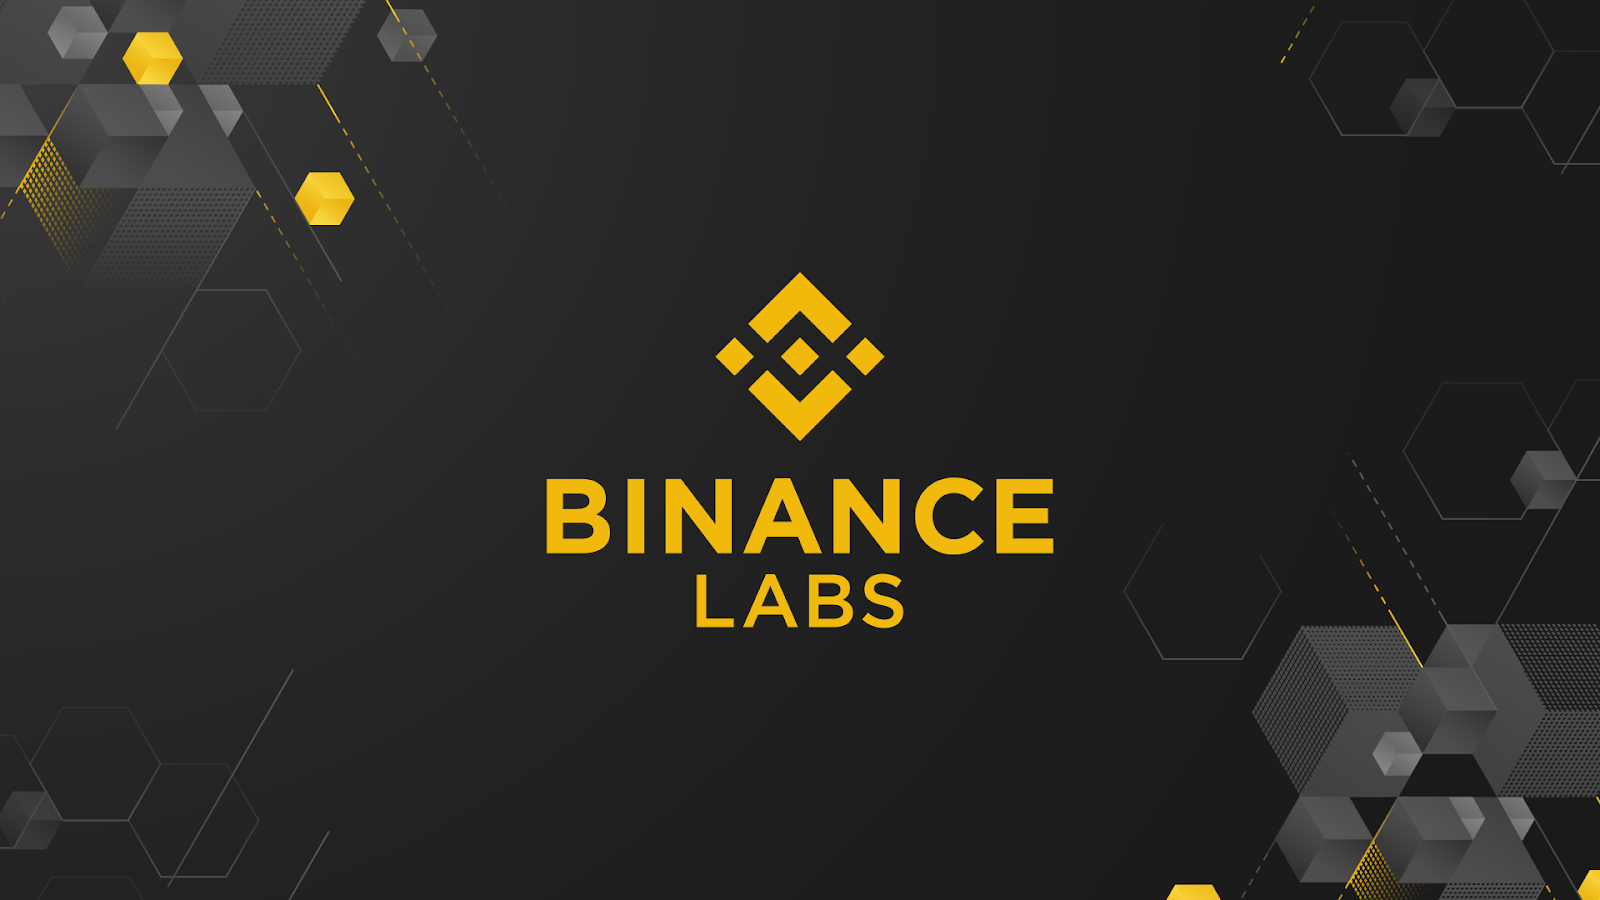 Binance Labs huy động vốn 500 triệu đô la từ quỹ Web3